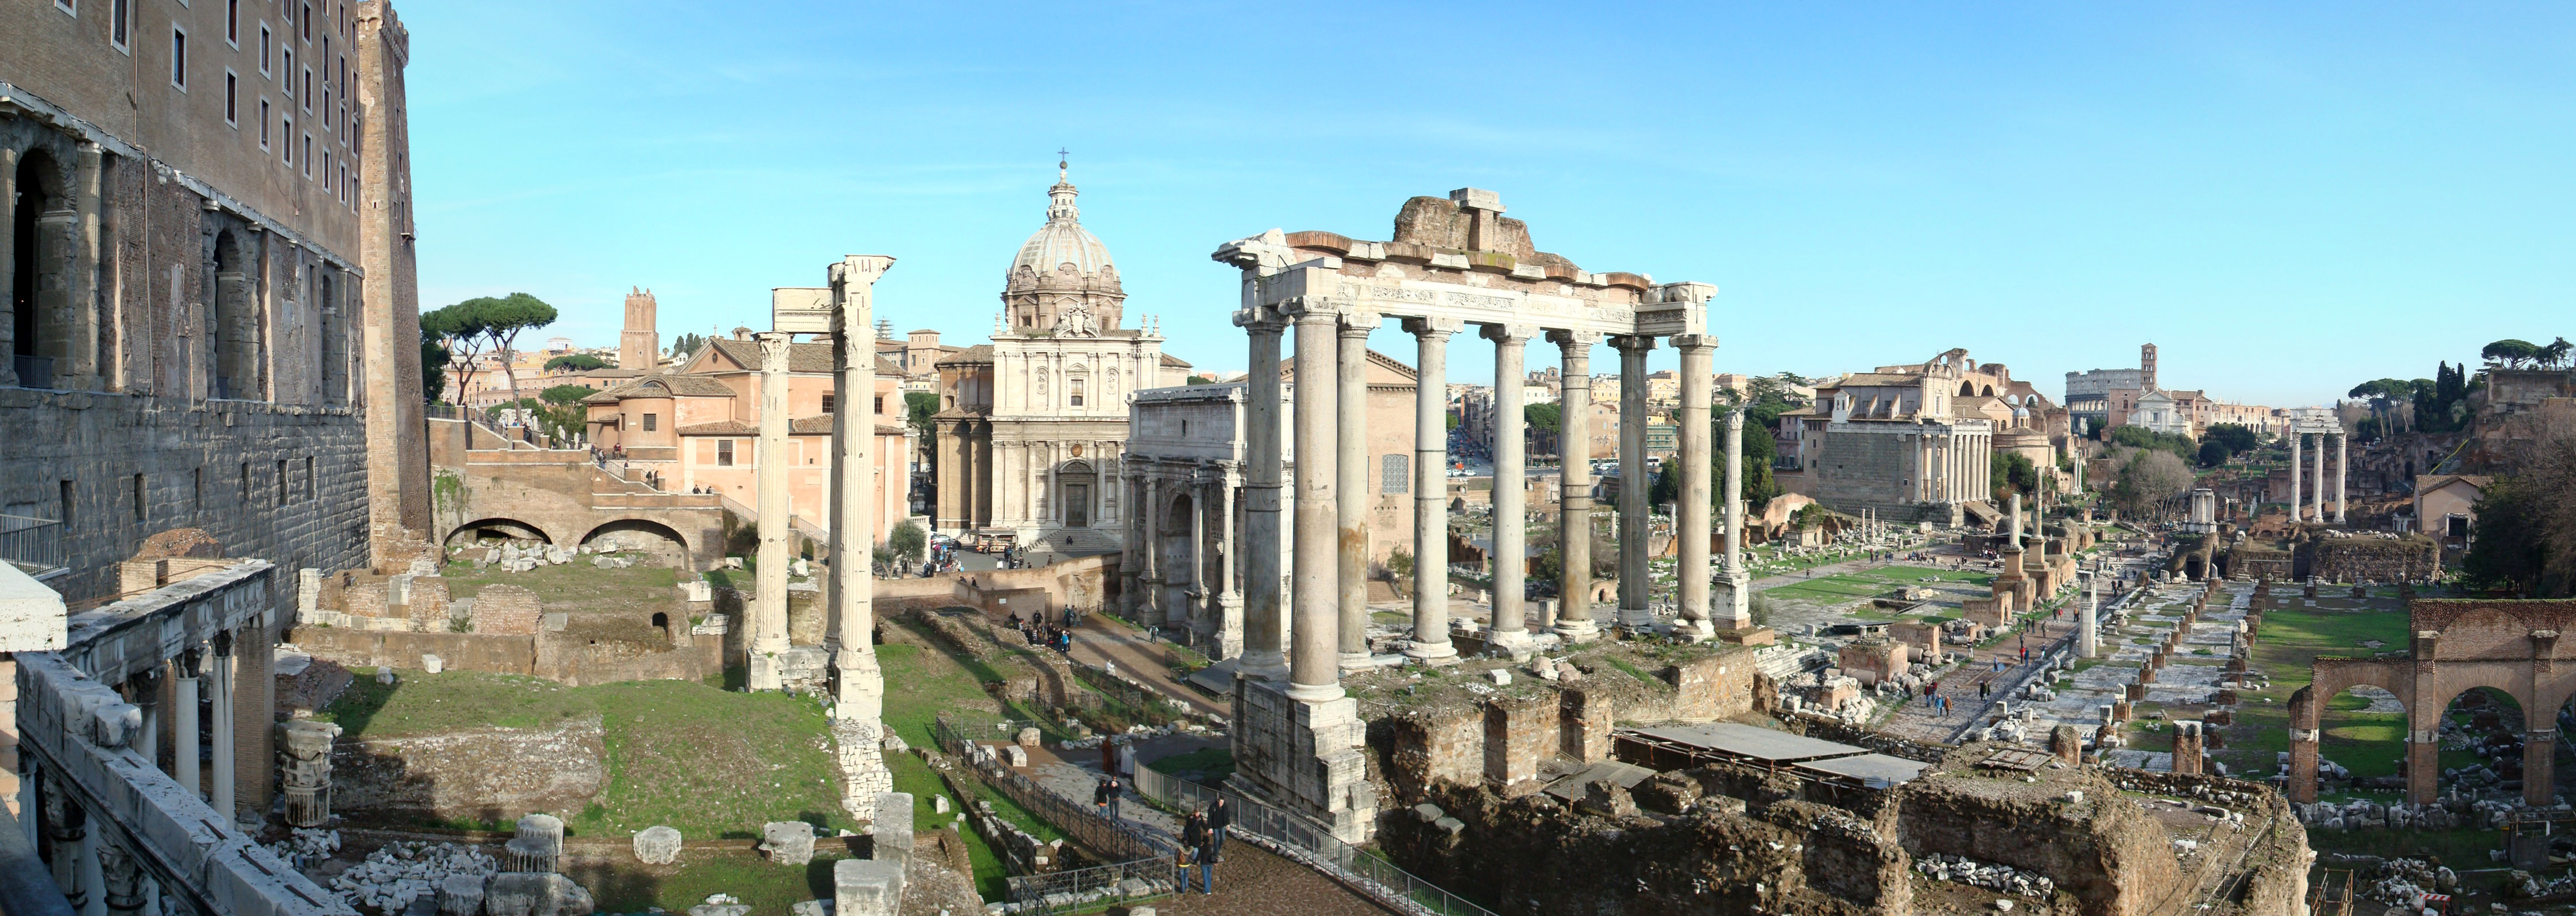 Forum Romanum | Bezienswaardigheden | Dit is Rome